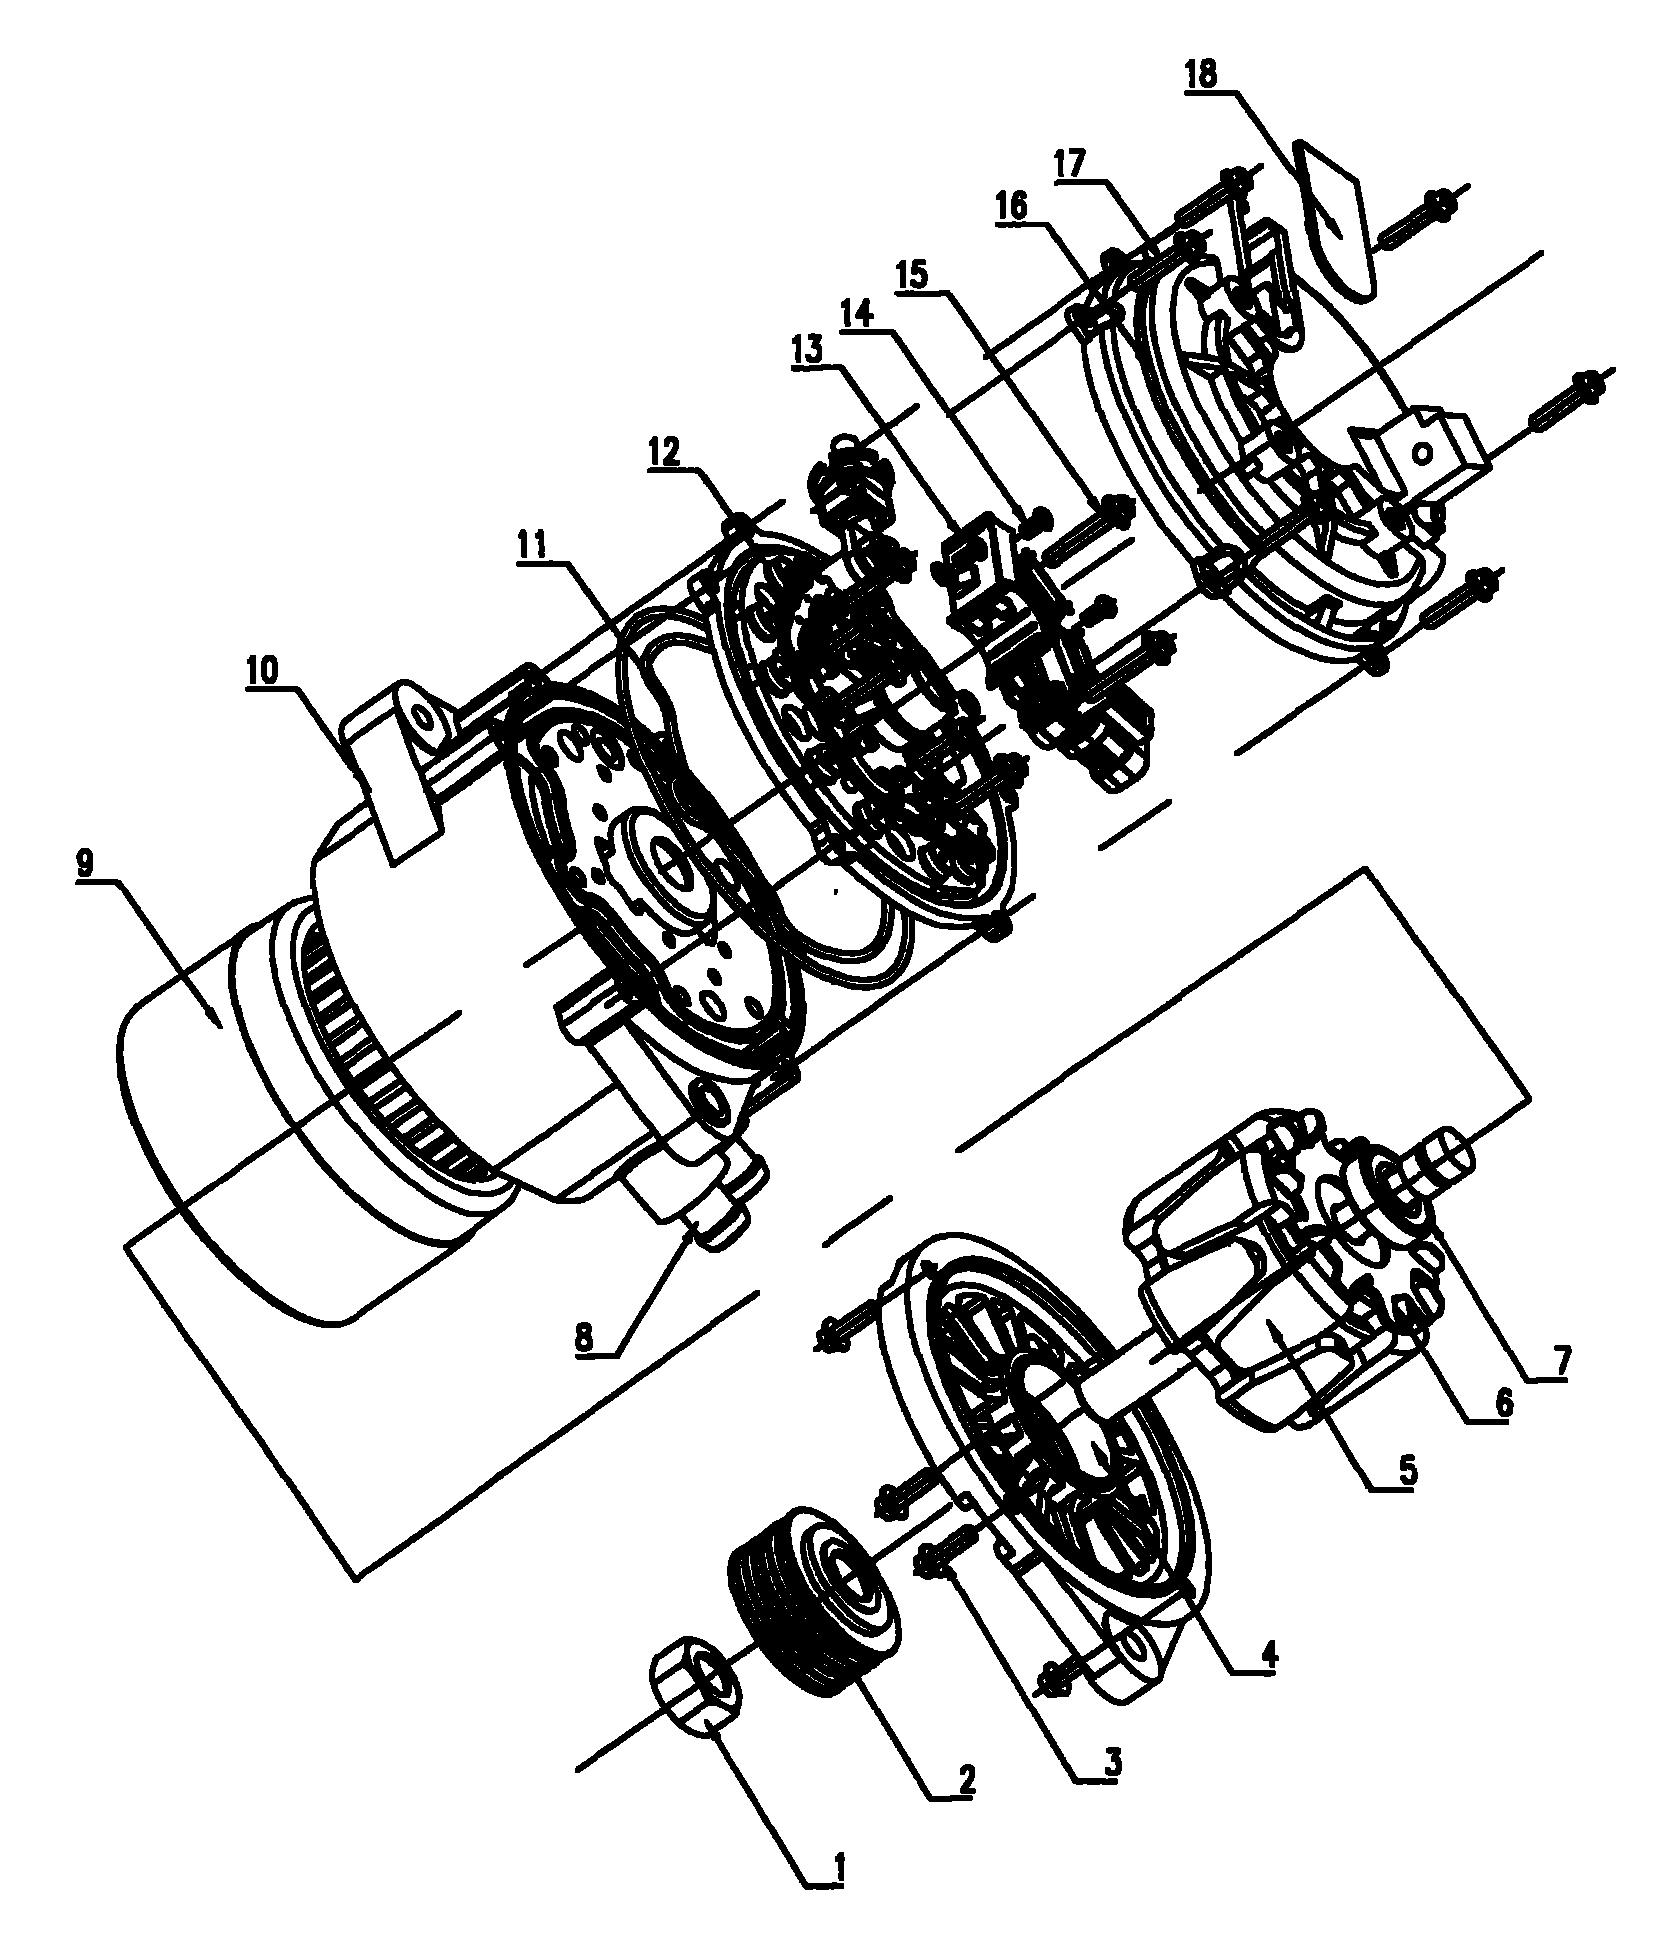 一种水冷式汽车交流发电机,由标准螺母,皮带轮,标准螺杆,前端盖,转子